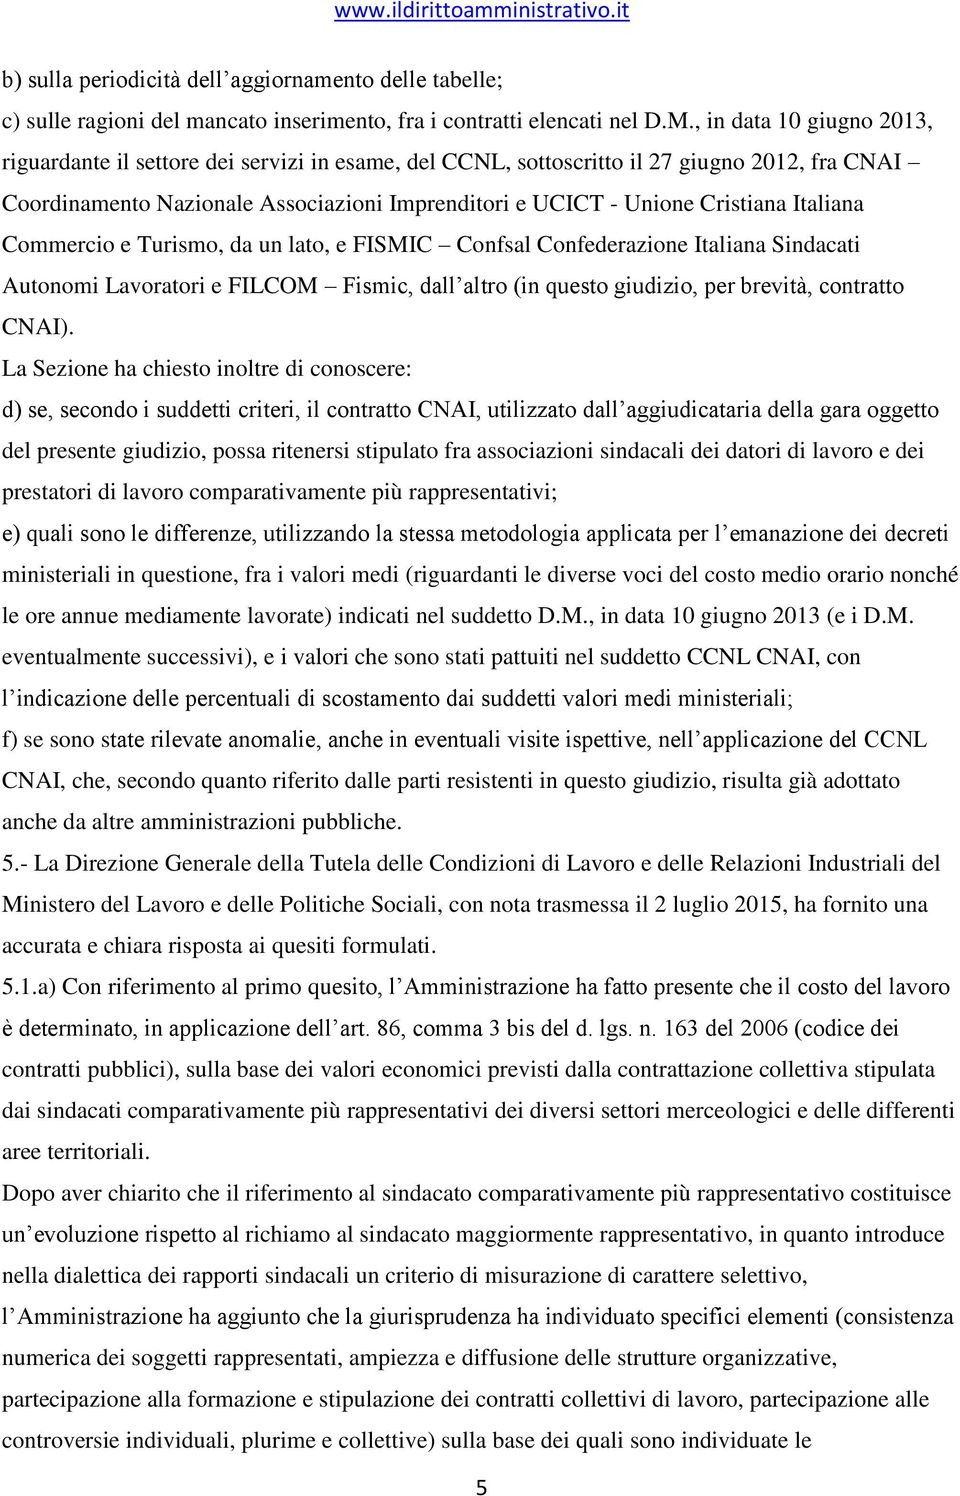 Italiana Commercio e Turismo, da un lato, e FISMIC Confsal Confederazione Italiana Sindacati Autonomi Lavoratori e FILCOM Fismic, dall altro (in questo giudizio, per brevità, contratto CNAI).